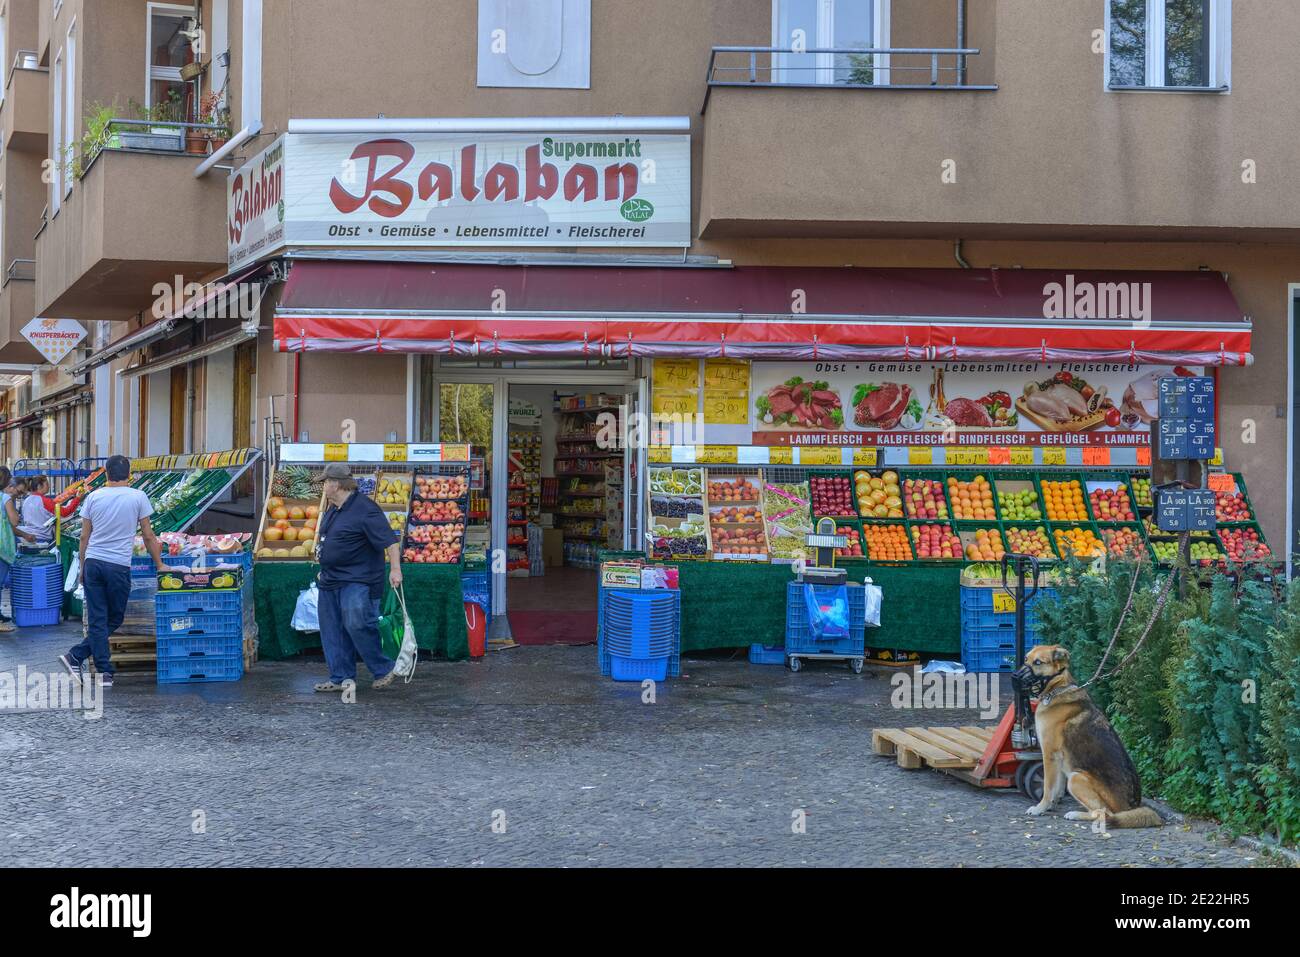 Türkischer Supermarkt, Föhrer Strasse, Wedding, Mitte, Berlin, Deutschland Stock Photo